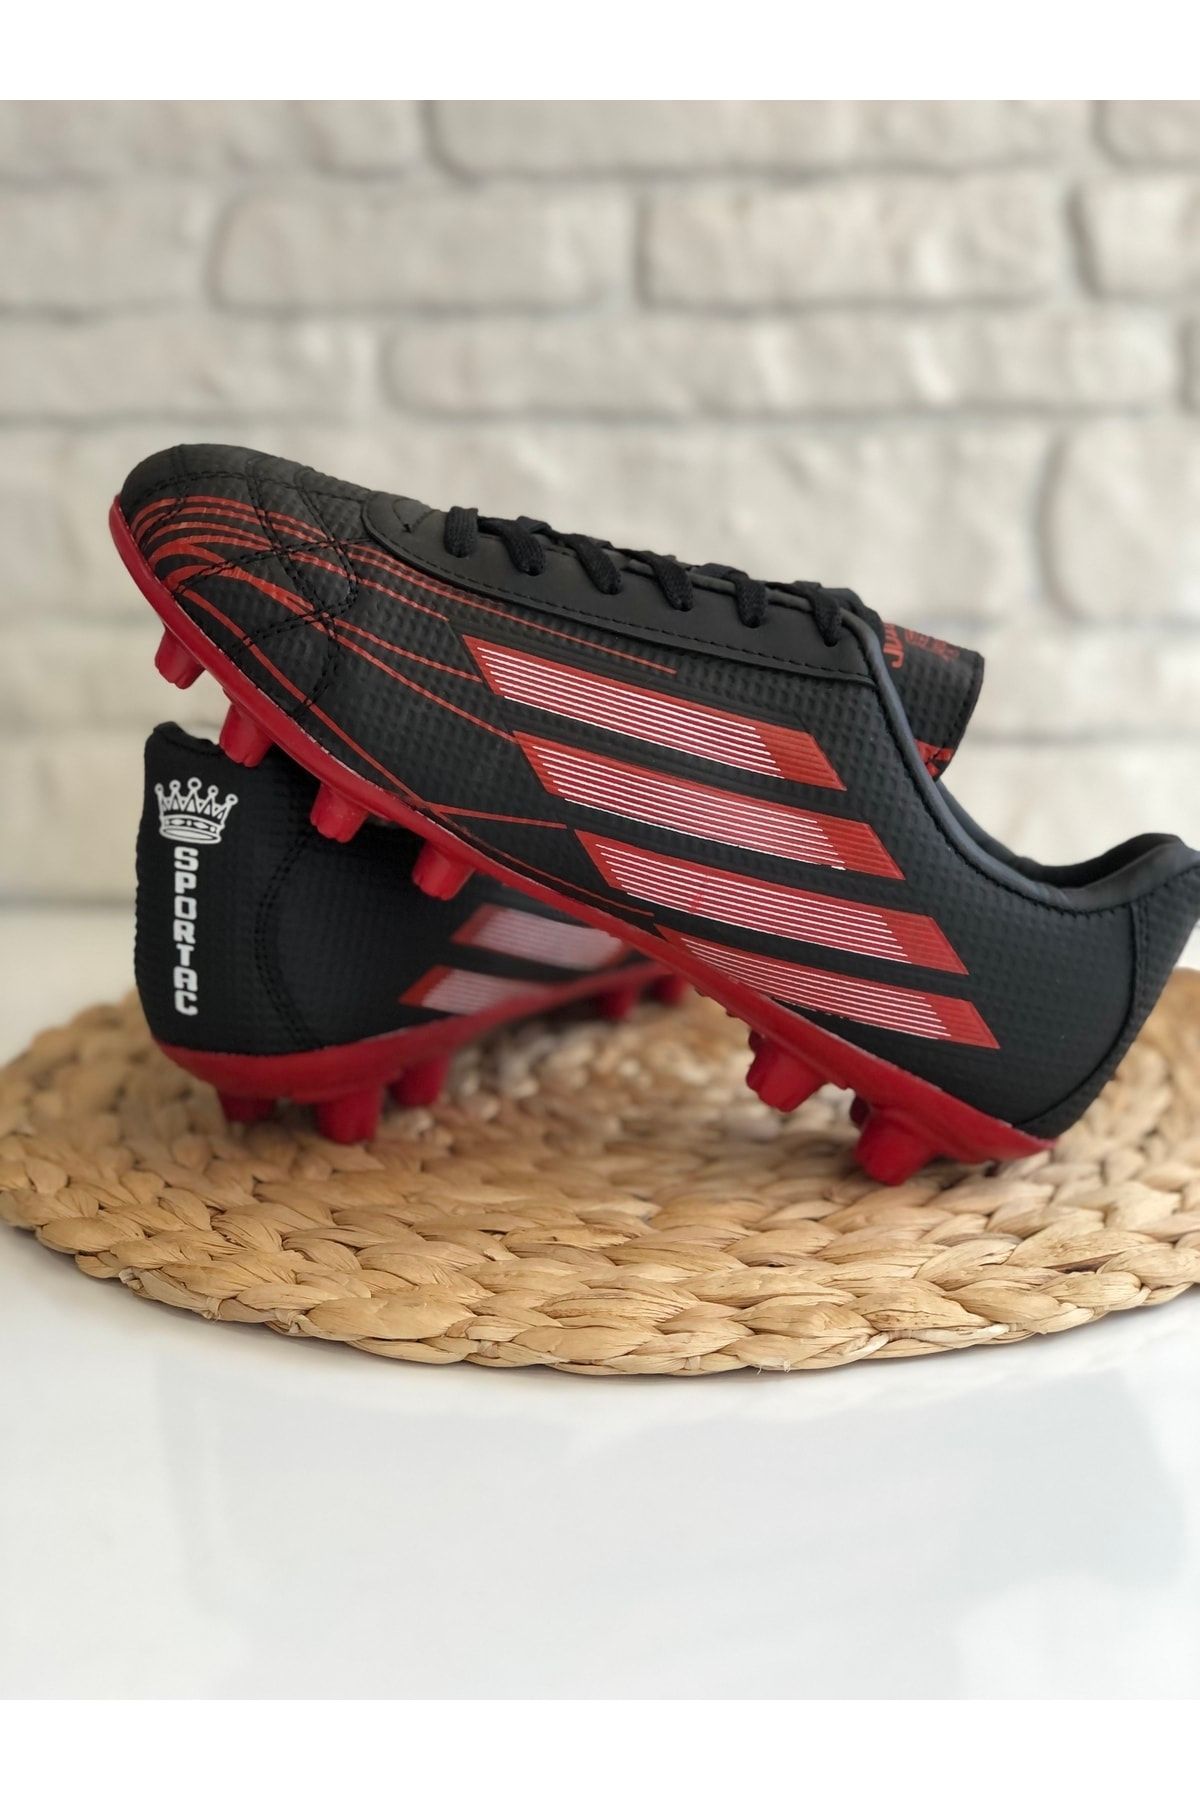 SPORTAÇ Yeni Sezon Krampon Dişli  Futbol Ayakkabısı Siyah-Kırmızı